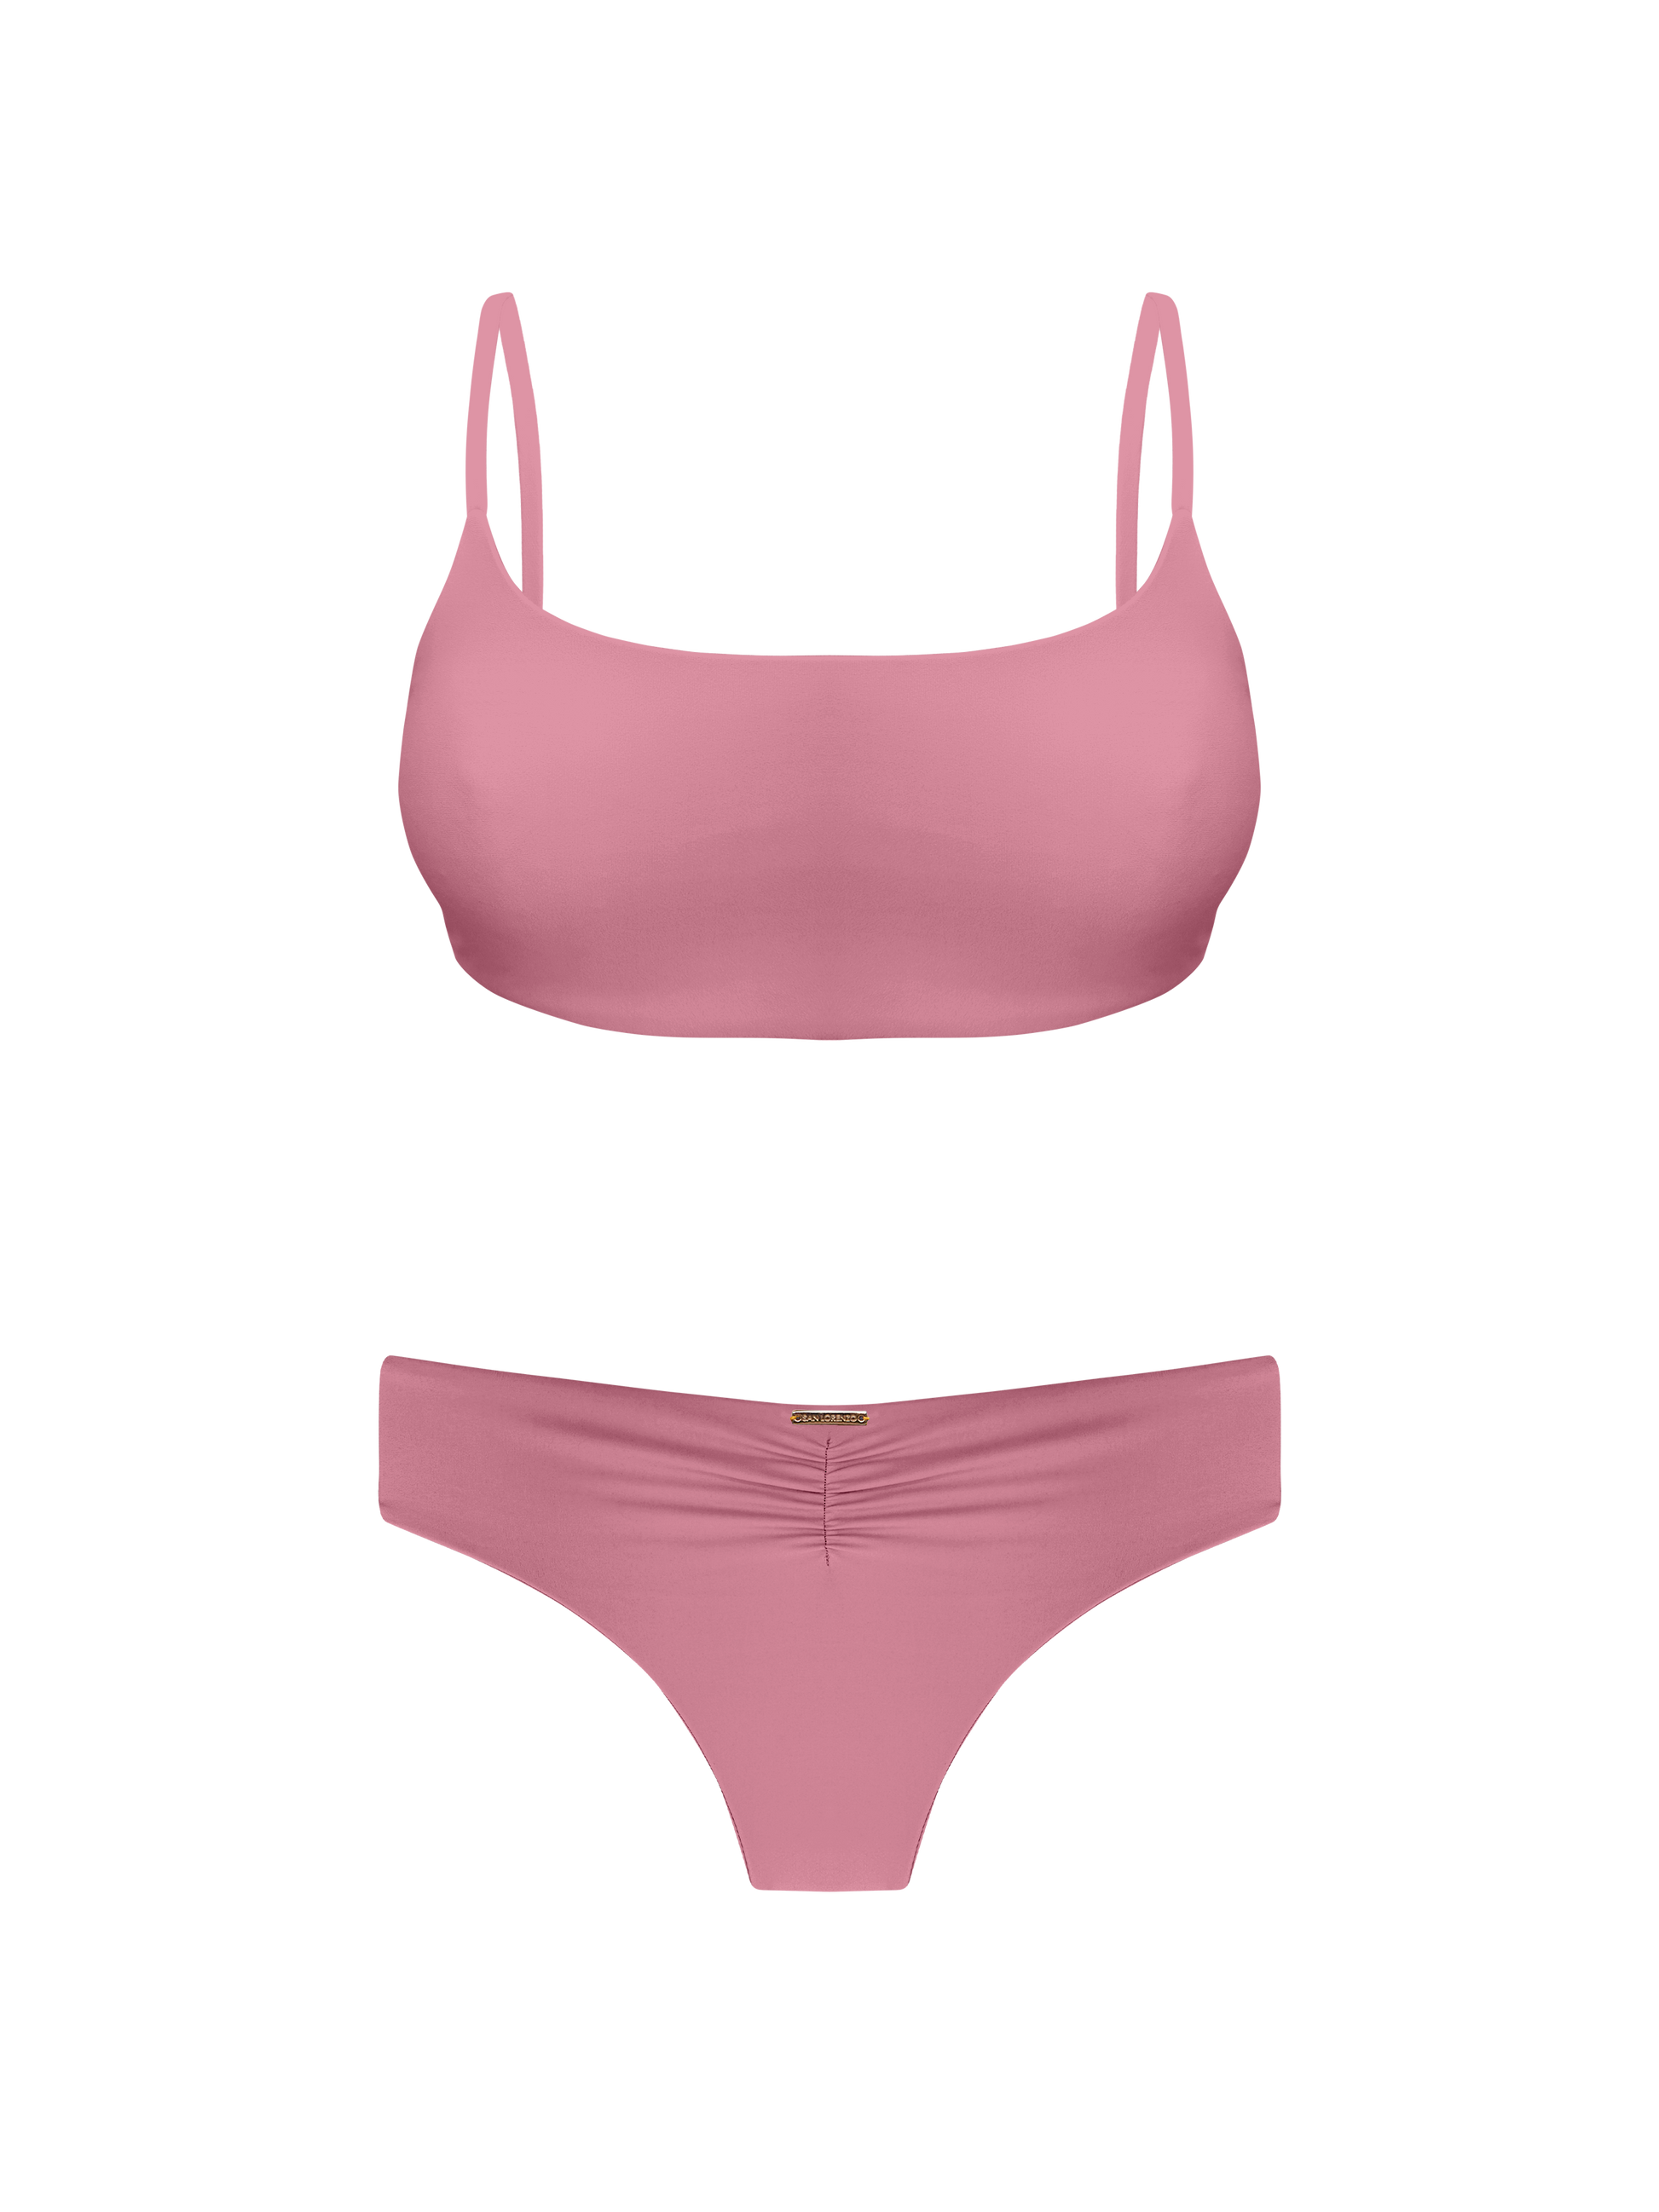 Sport Cross Back Bikini Top Bikinis X-Small San Coral Colletion Lorenzo Pink Top – Lorenzo By San